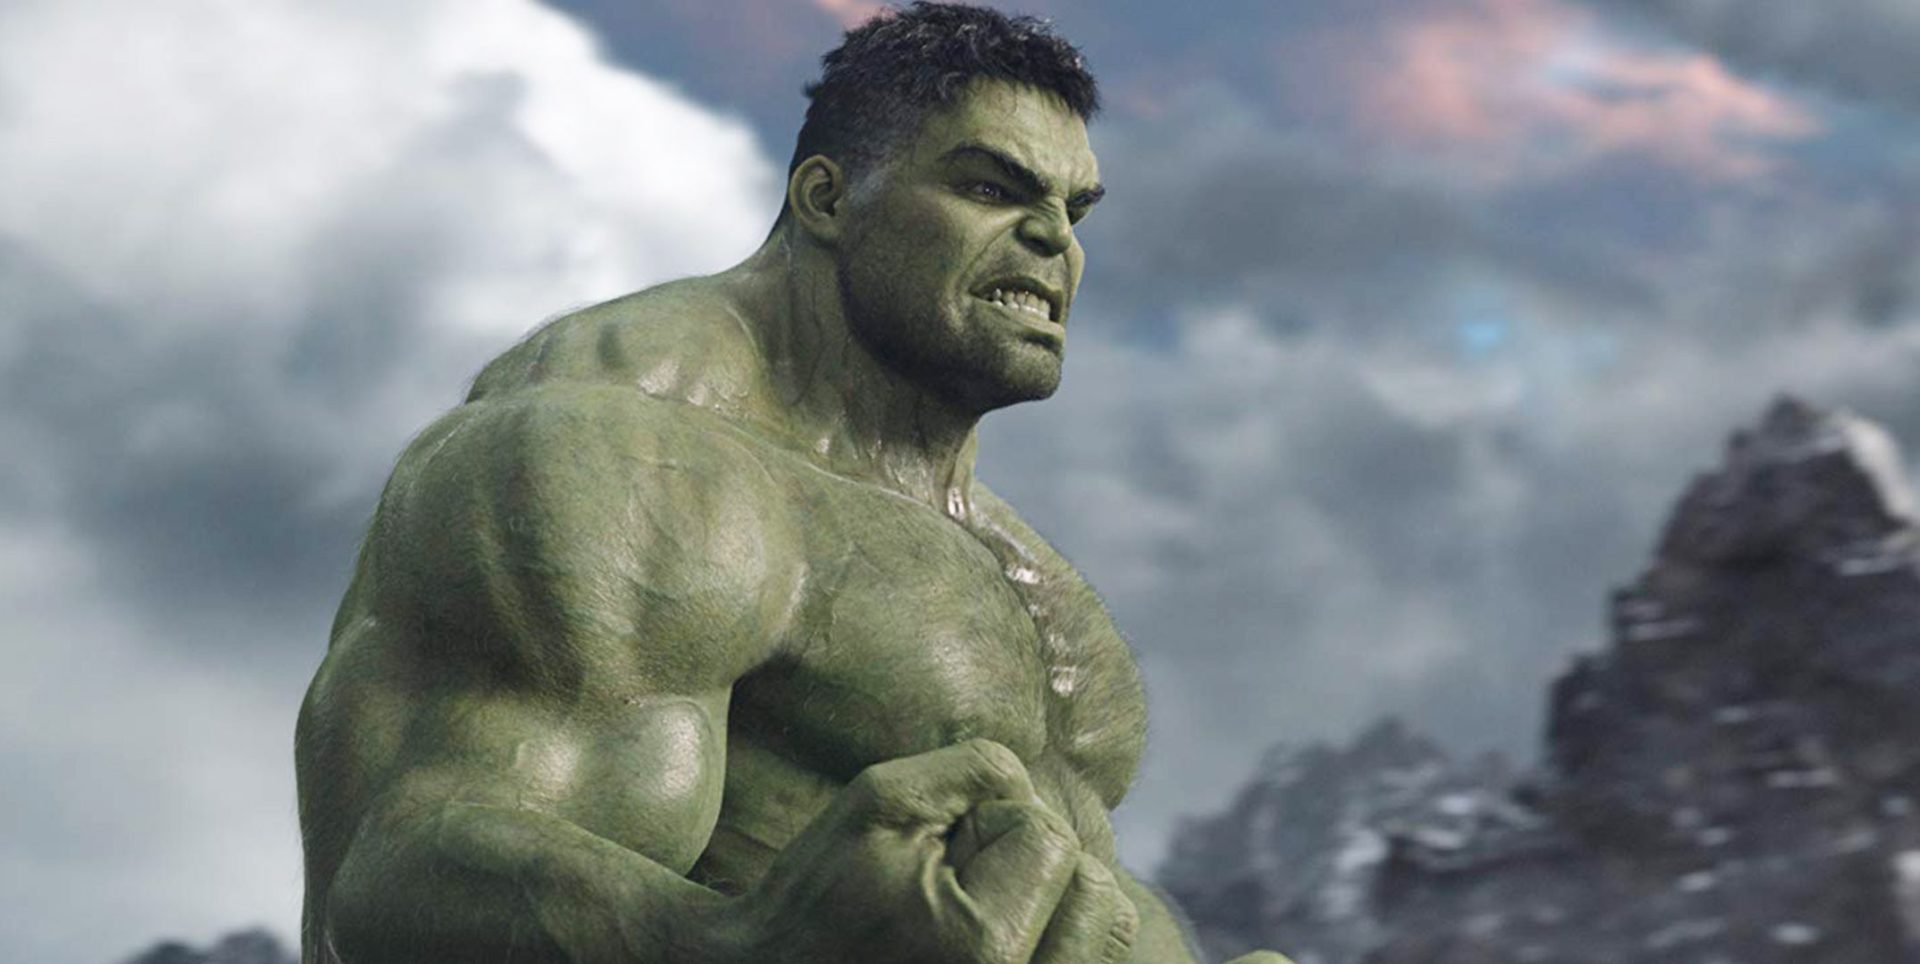 Roteiristas de Vingadores: Guerra Infinita revelam cena deletada de Hulk e [SPOILER]